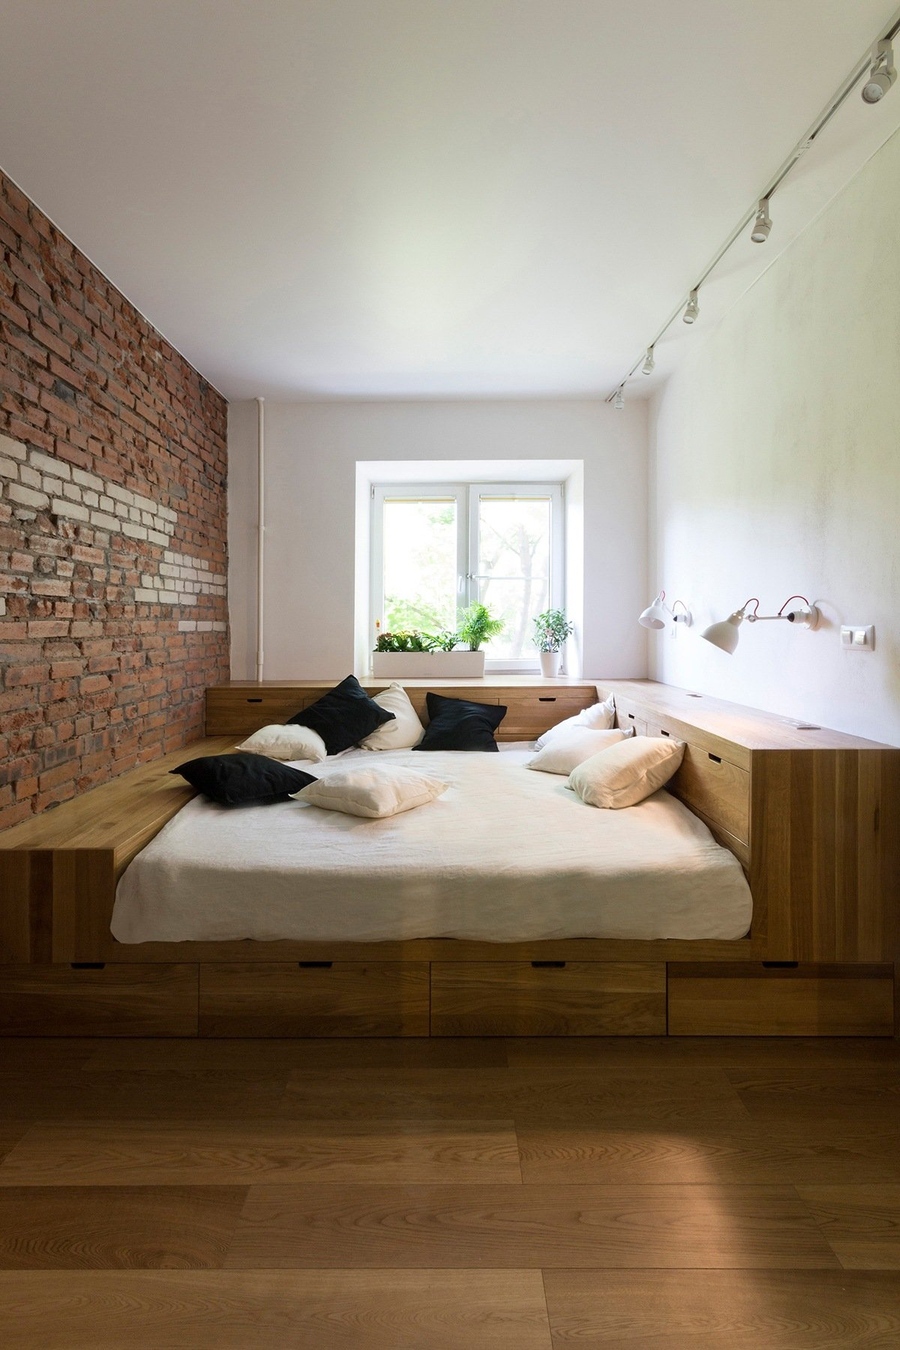 25 cách trang trí [decor] phòng ngủ nhỏ đẹp, đơn giản, tiết kiệm dễ làm